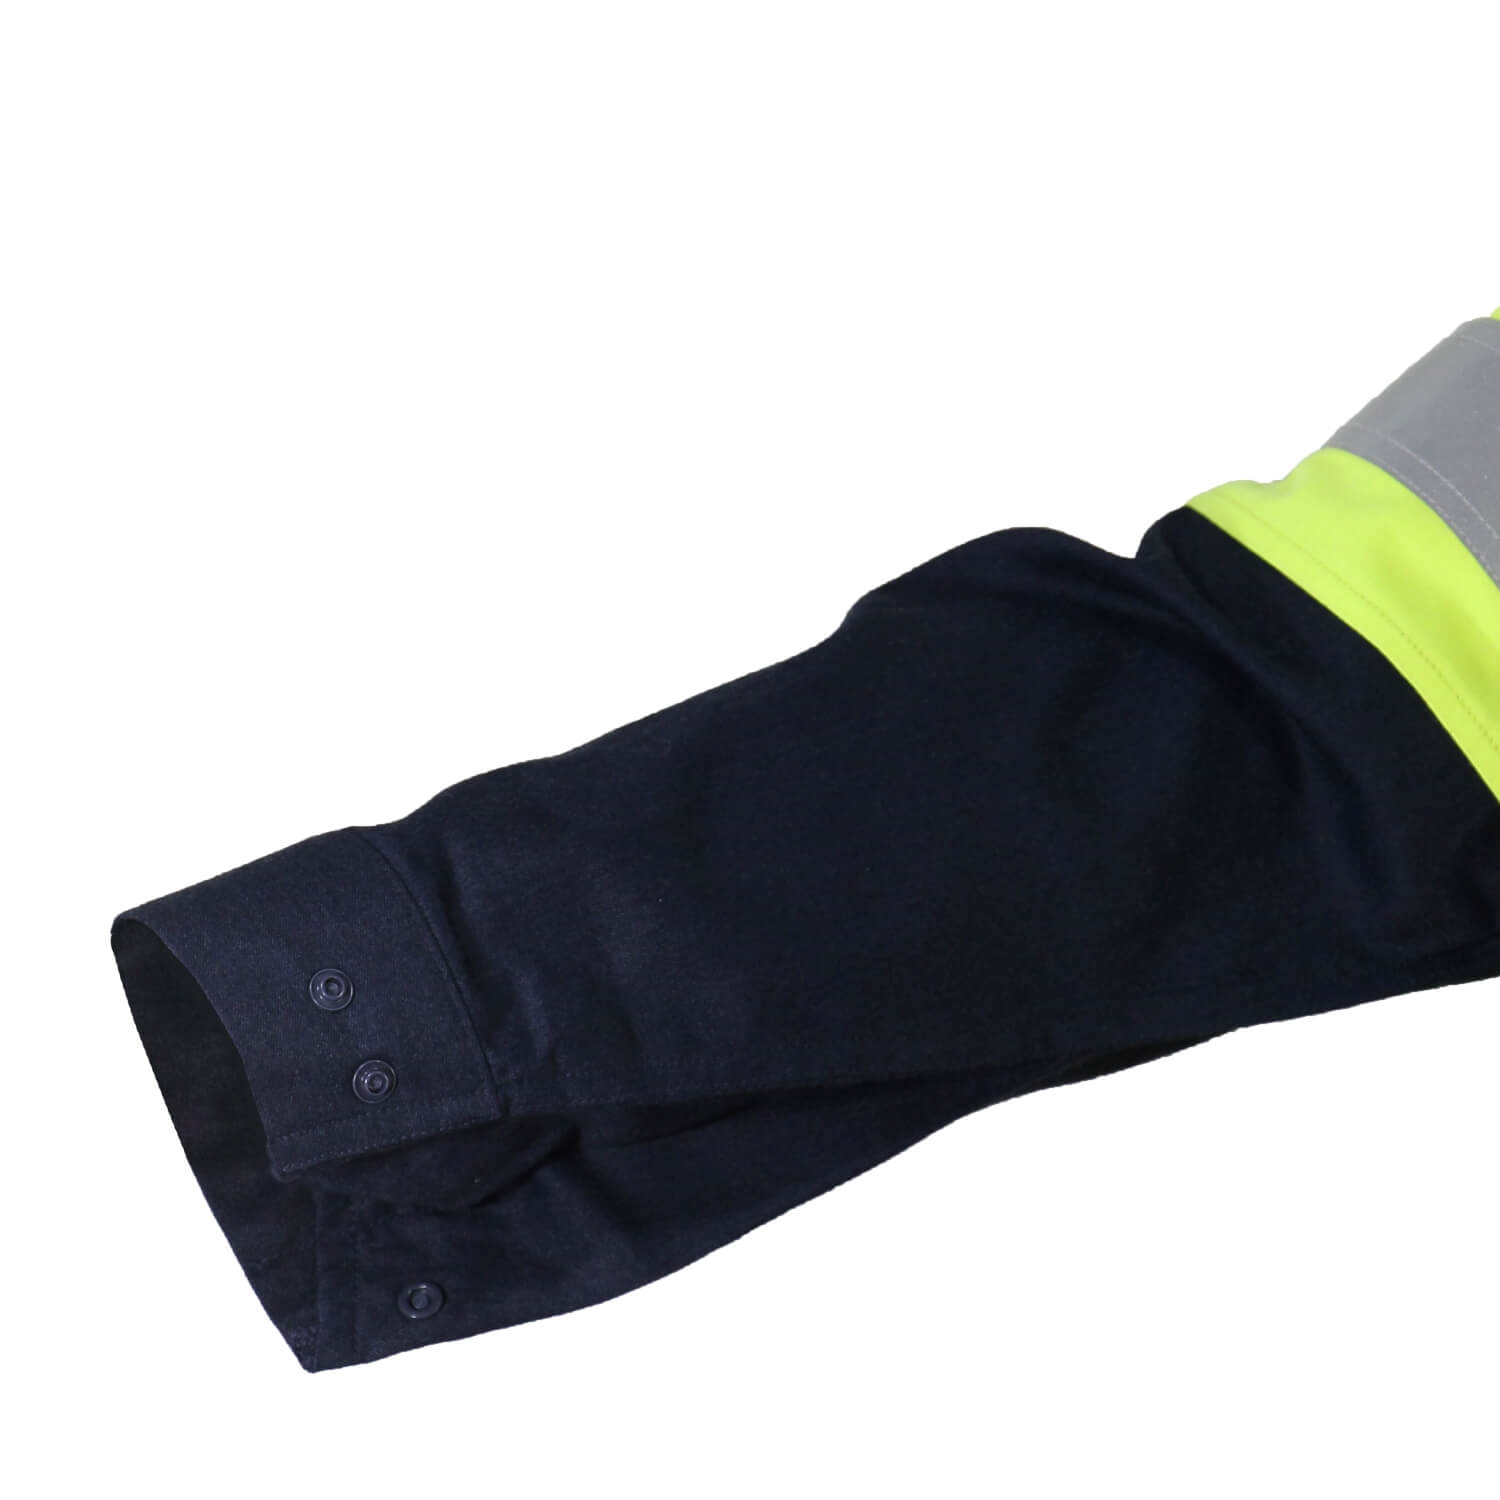 DNC Inherent Fr PPE1 2T L/W Shirt (3441)